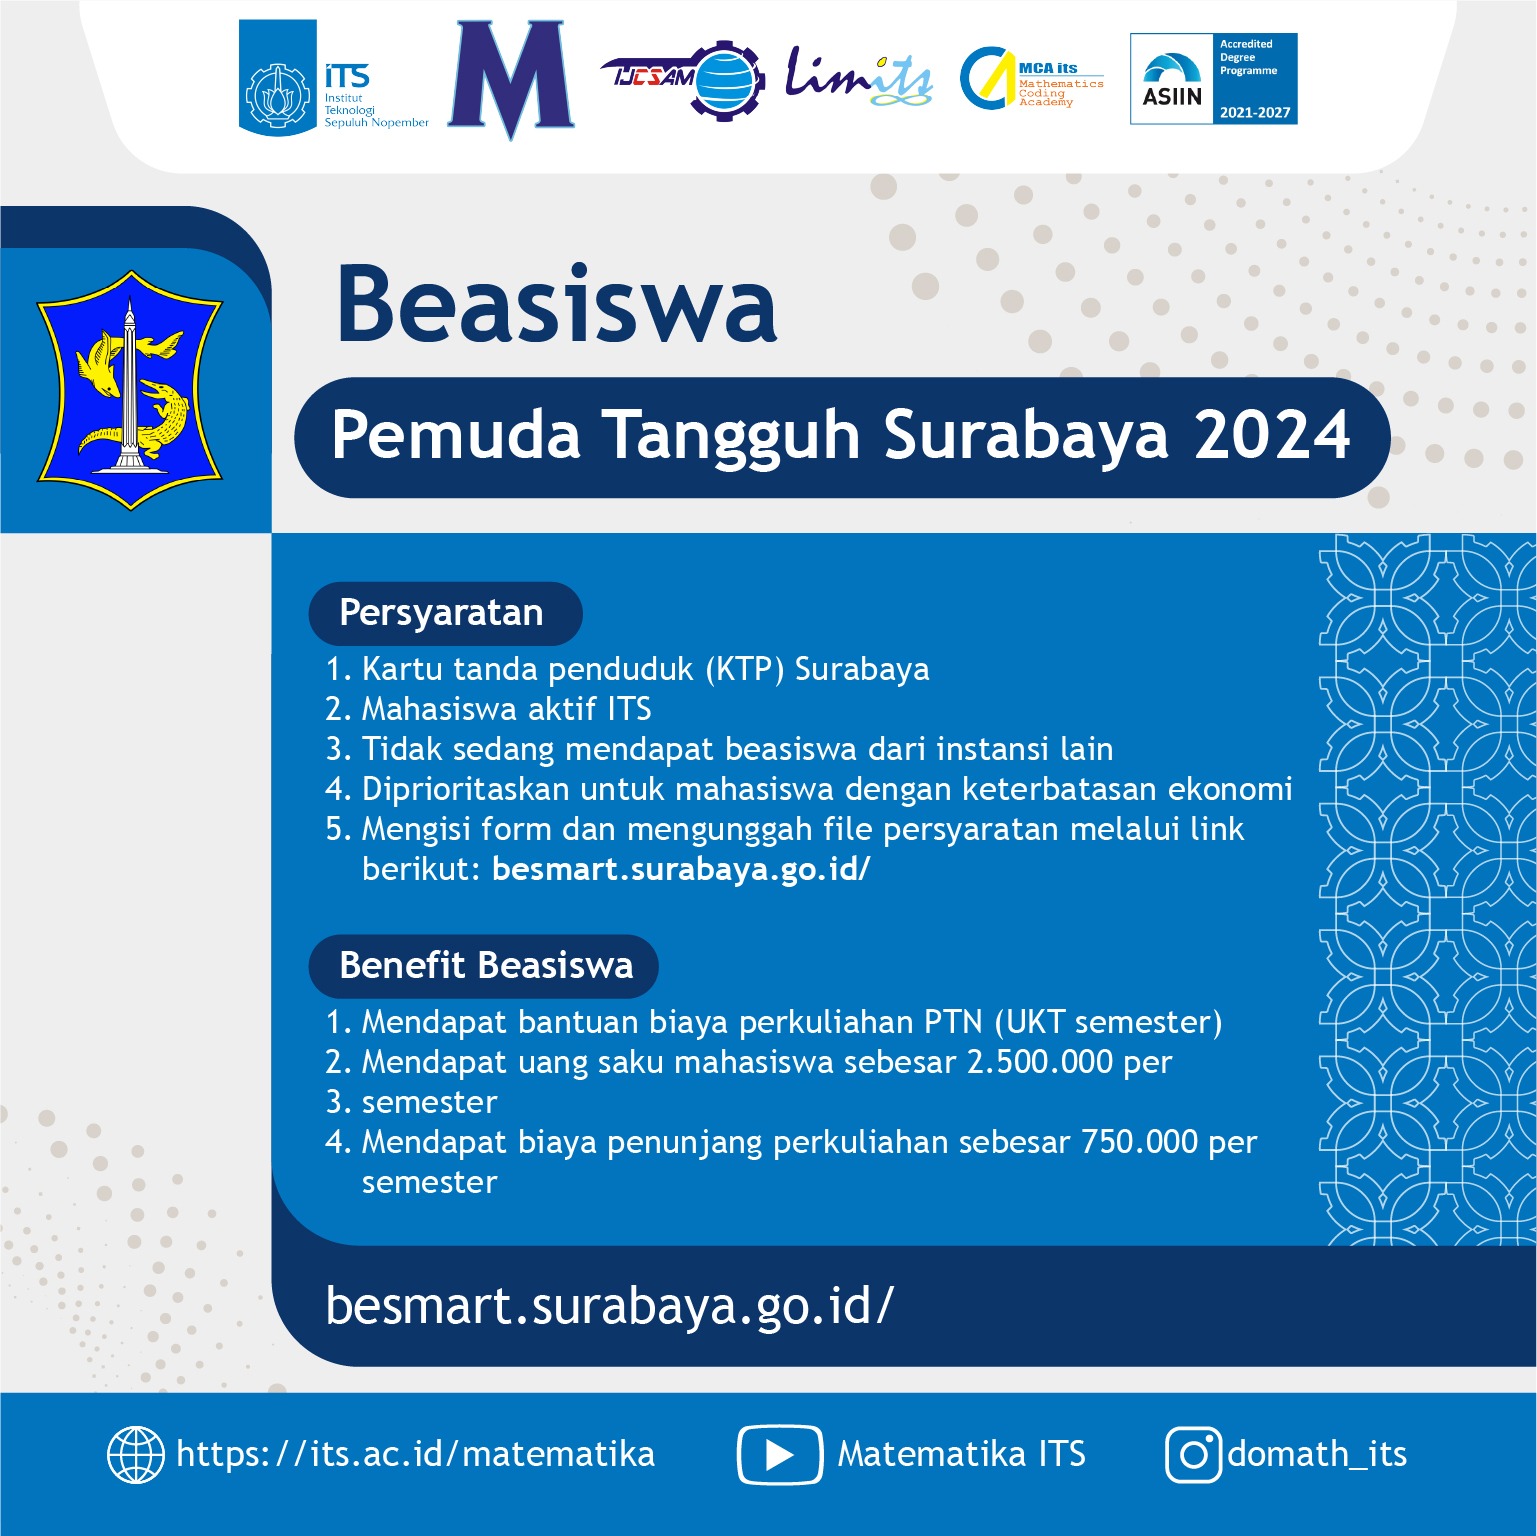 Beasiswa Pemuda Tangguh Surabaya 2024